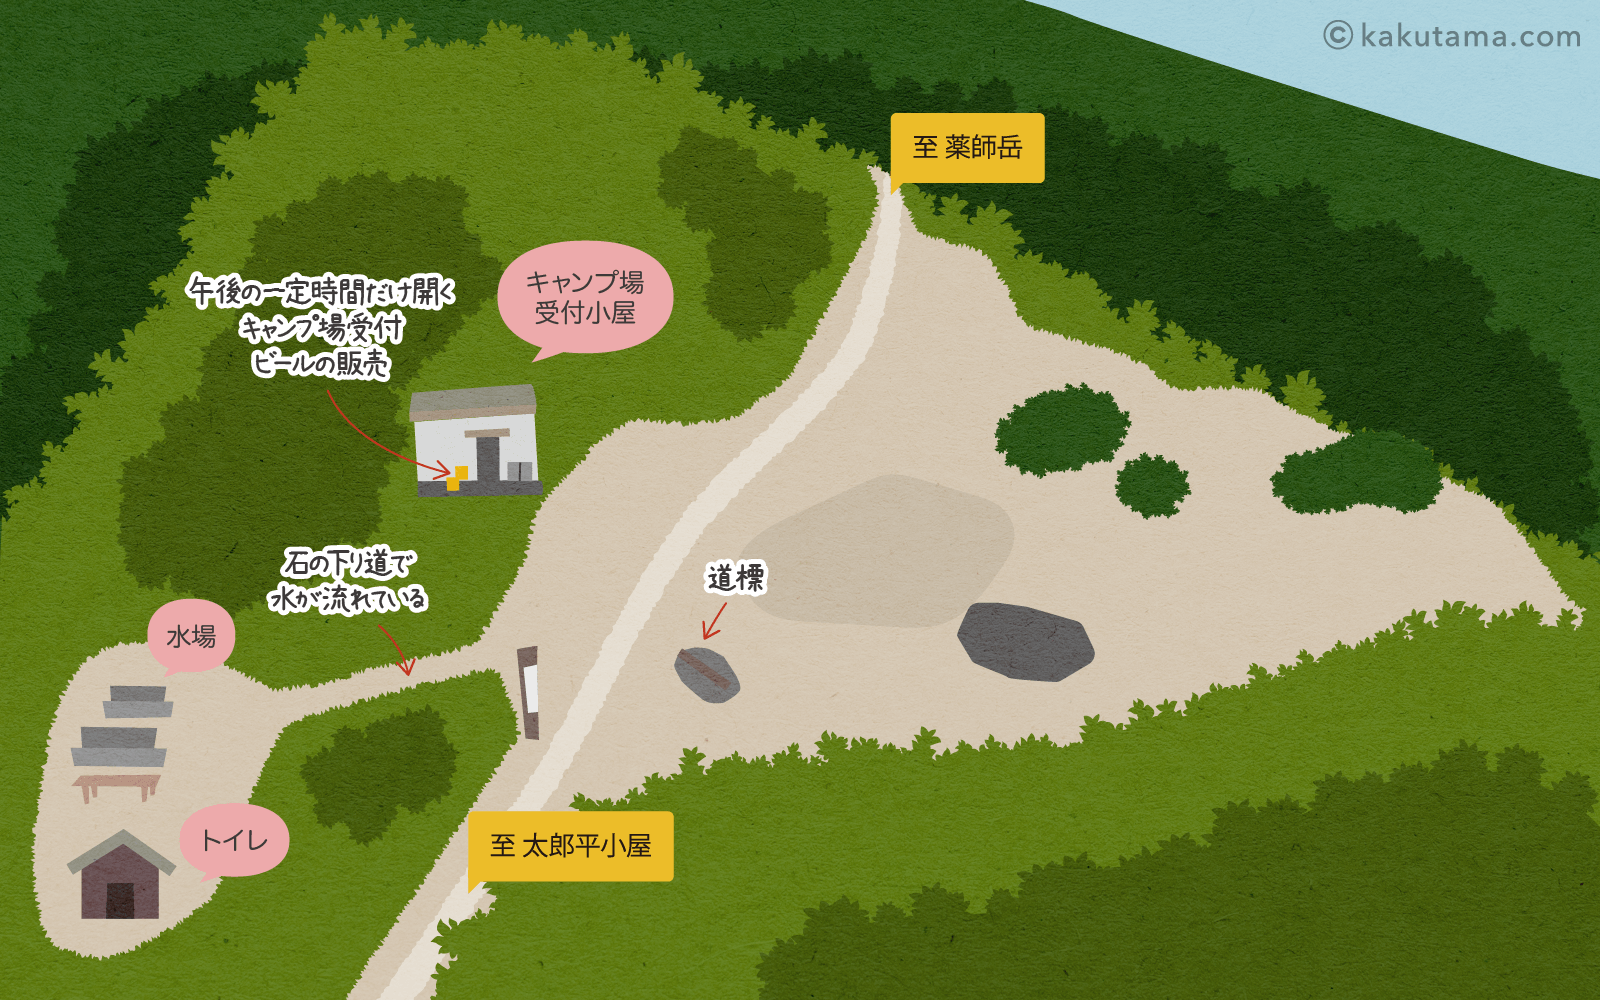 薬師峠キャンプ場のイラストマップ